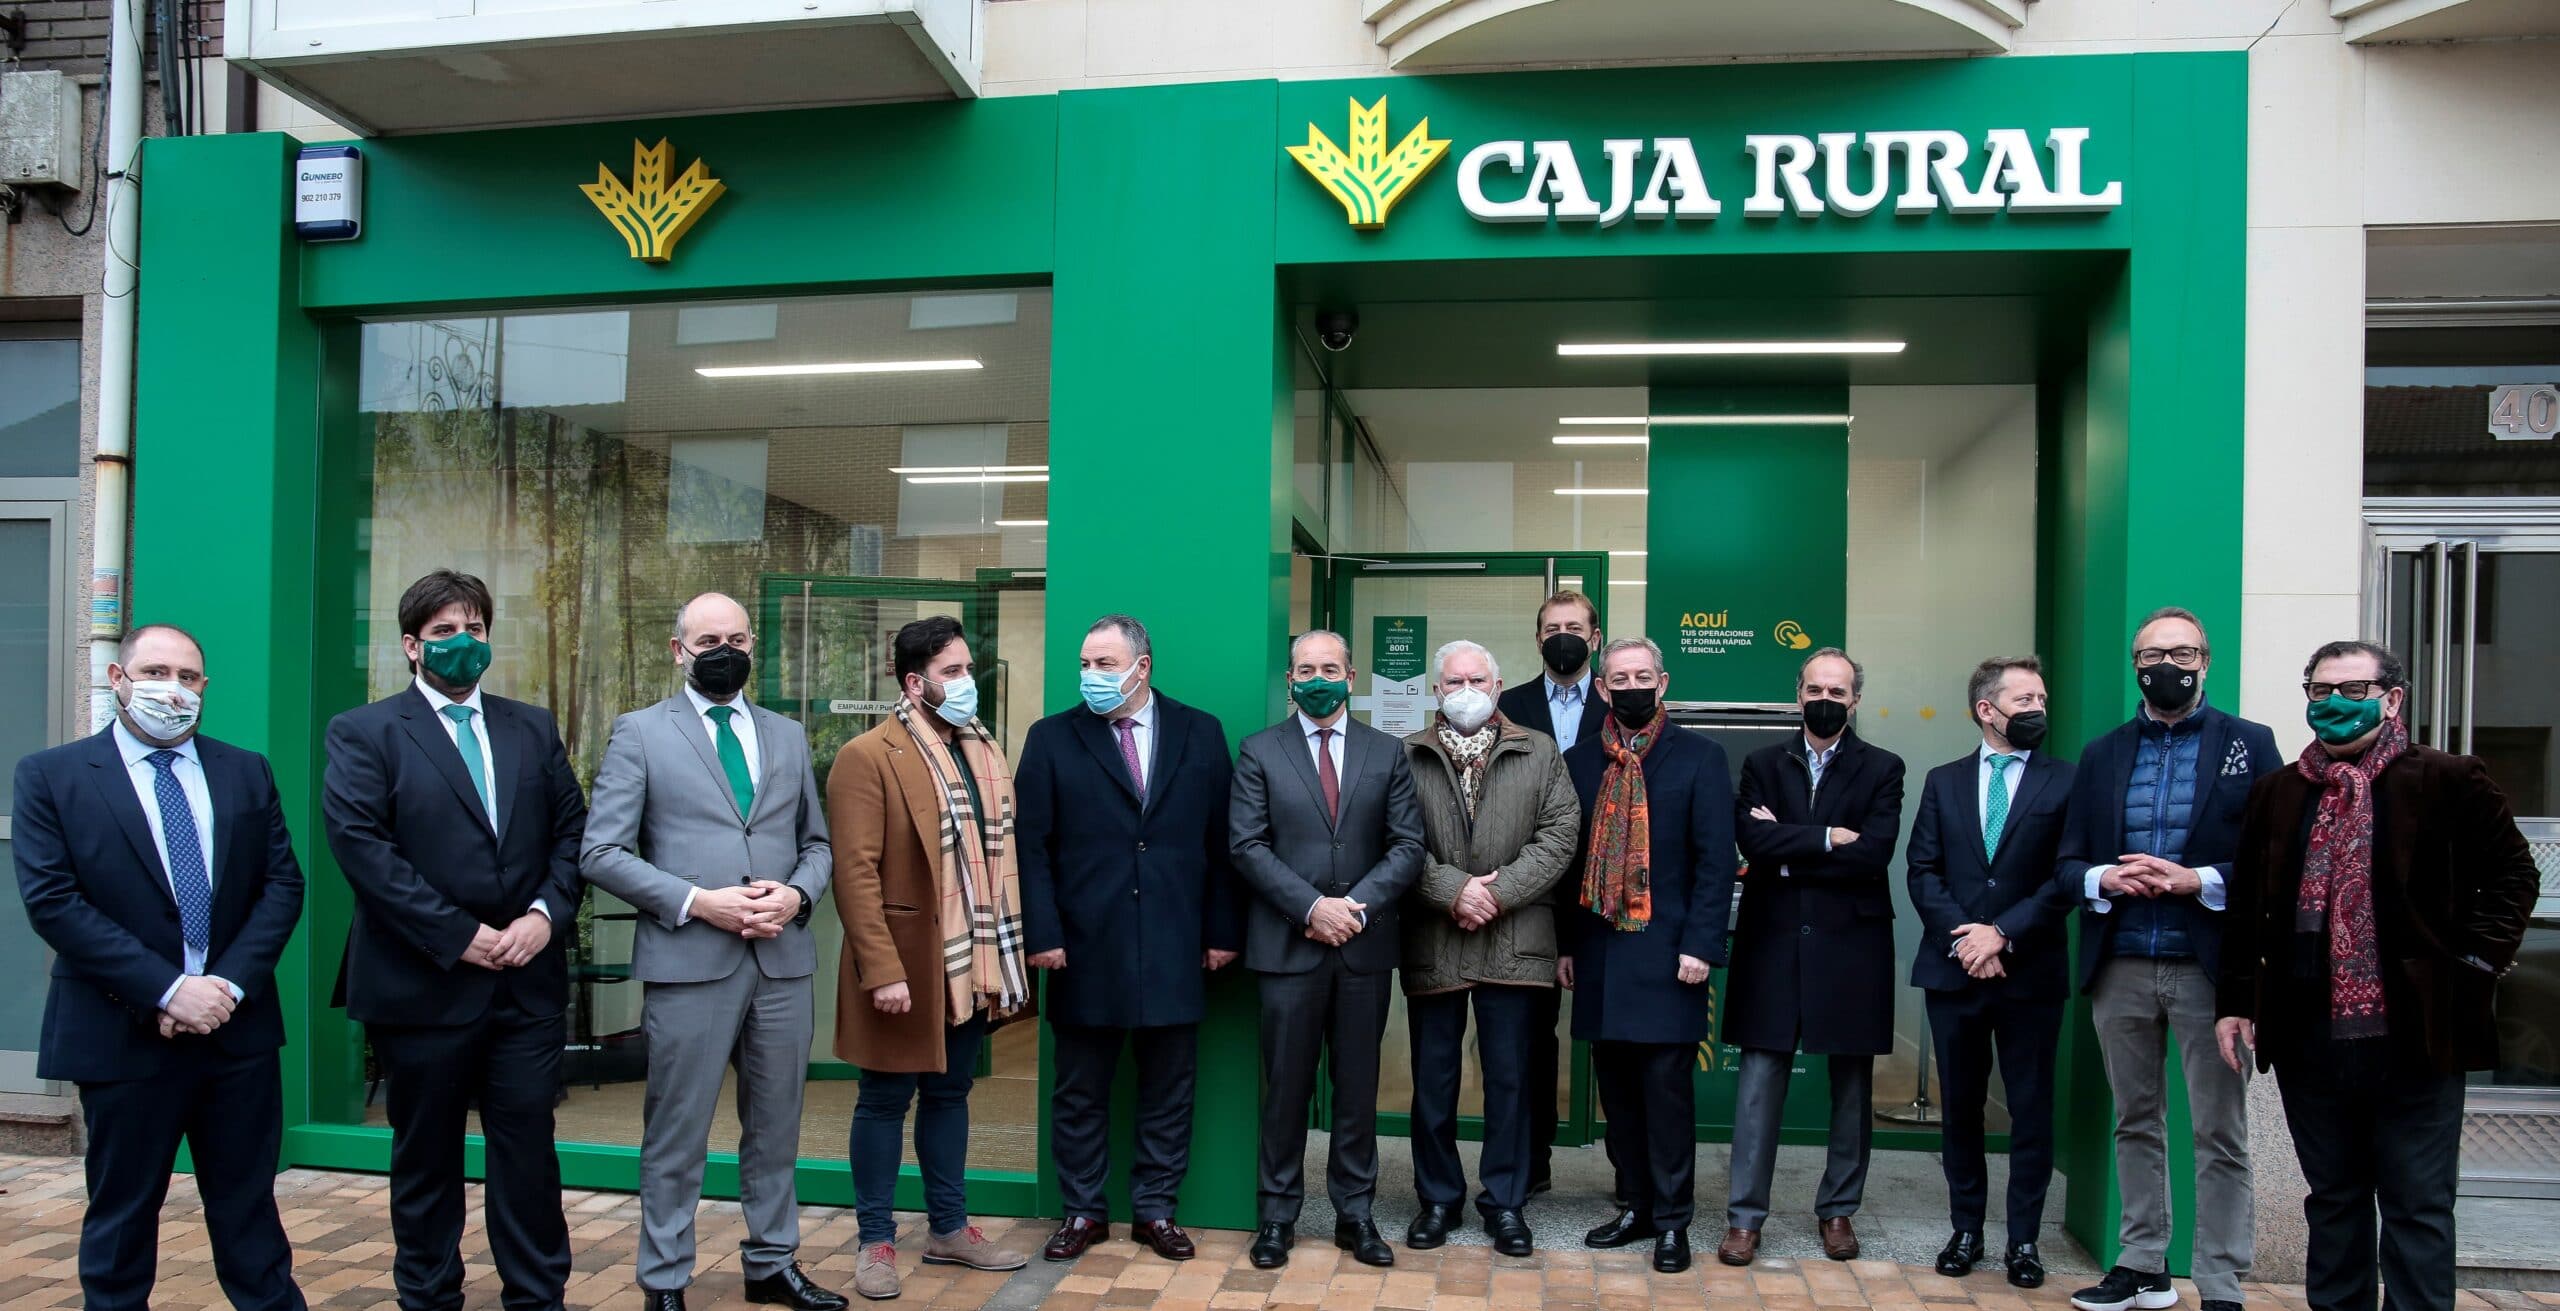 Caja Rural abre su nueva oficina en Villadangos del Páramo (León)